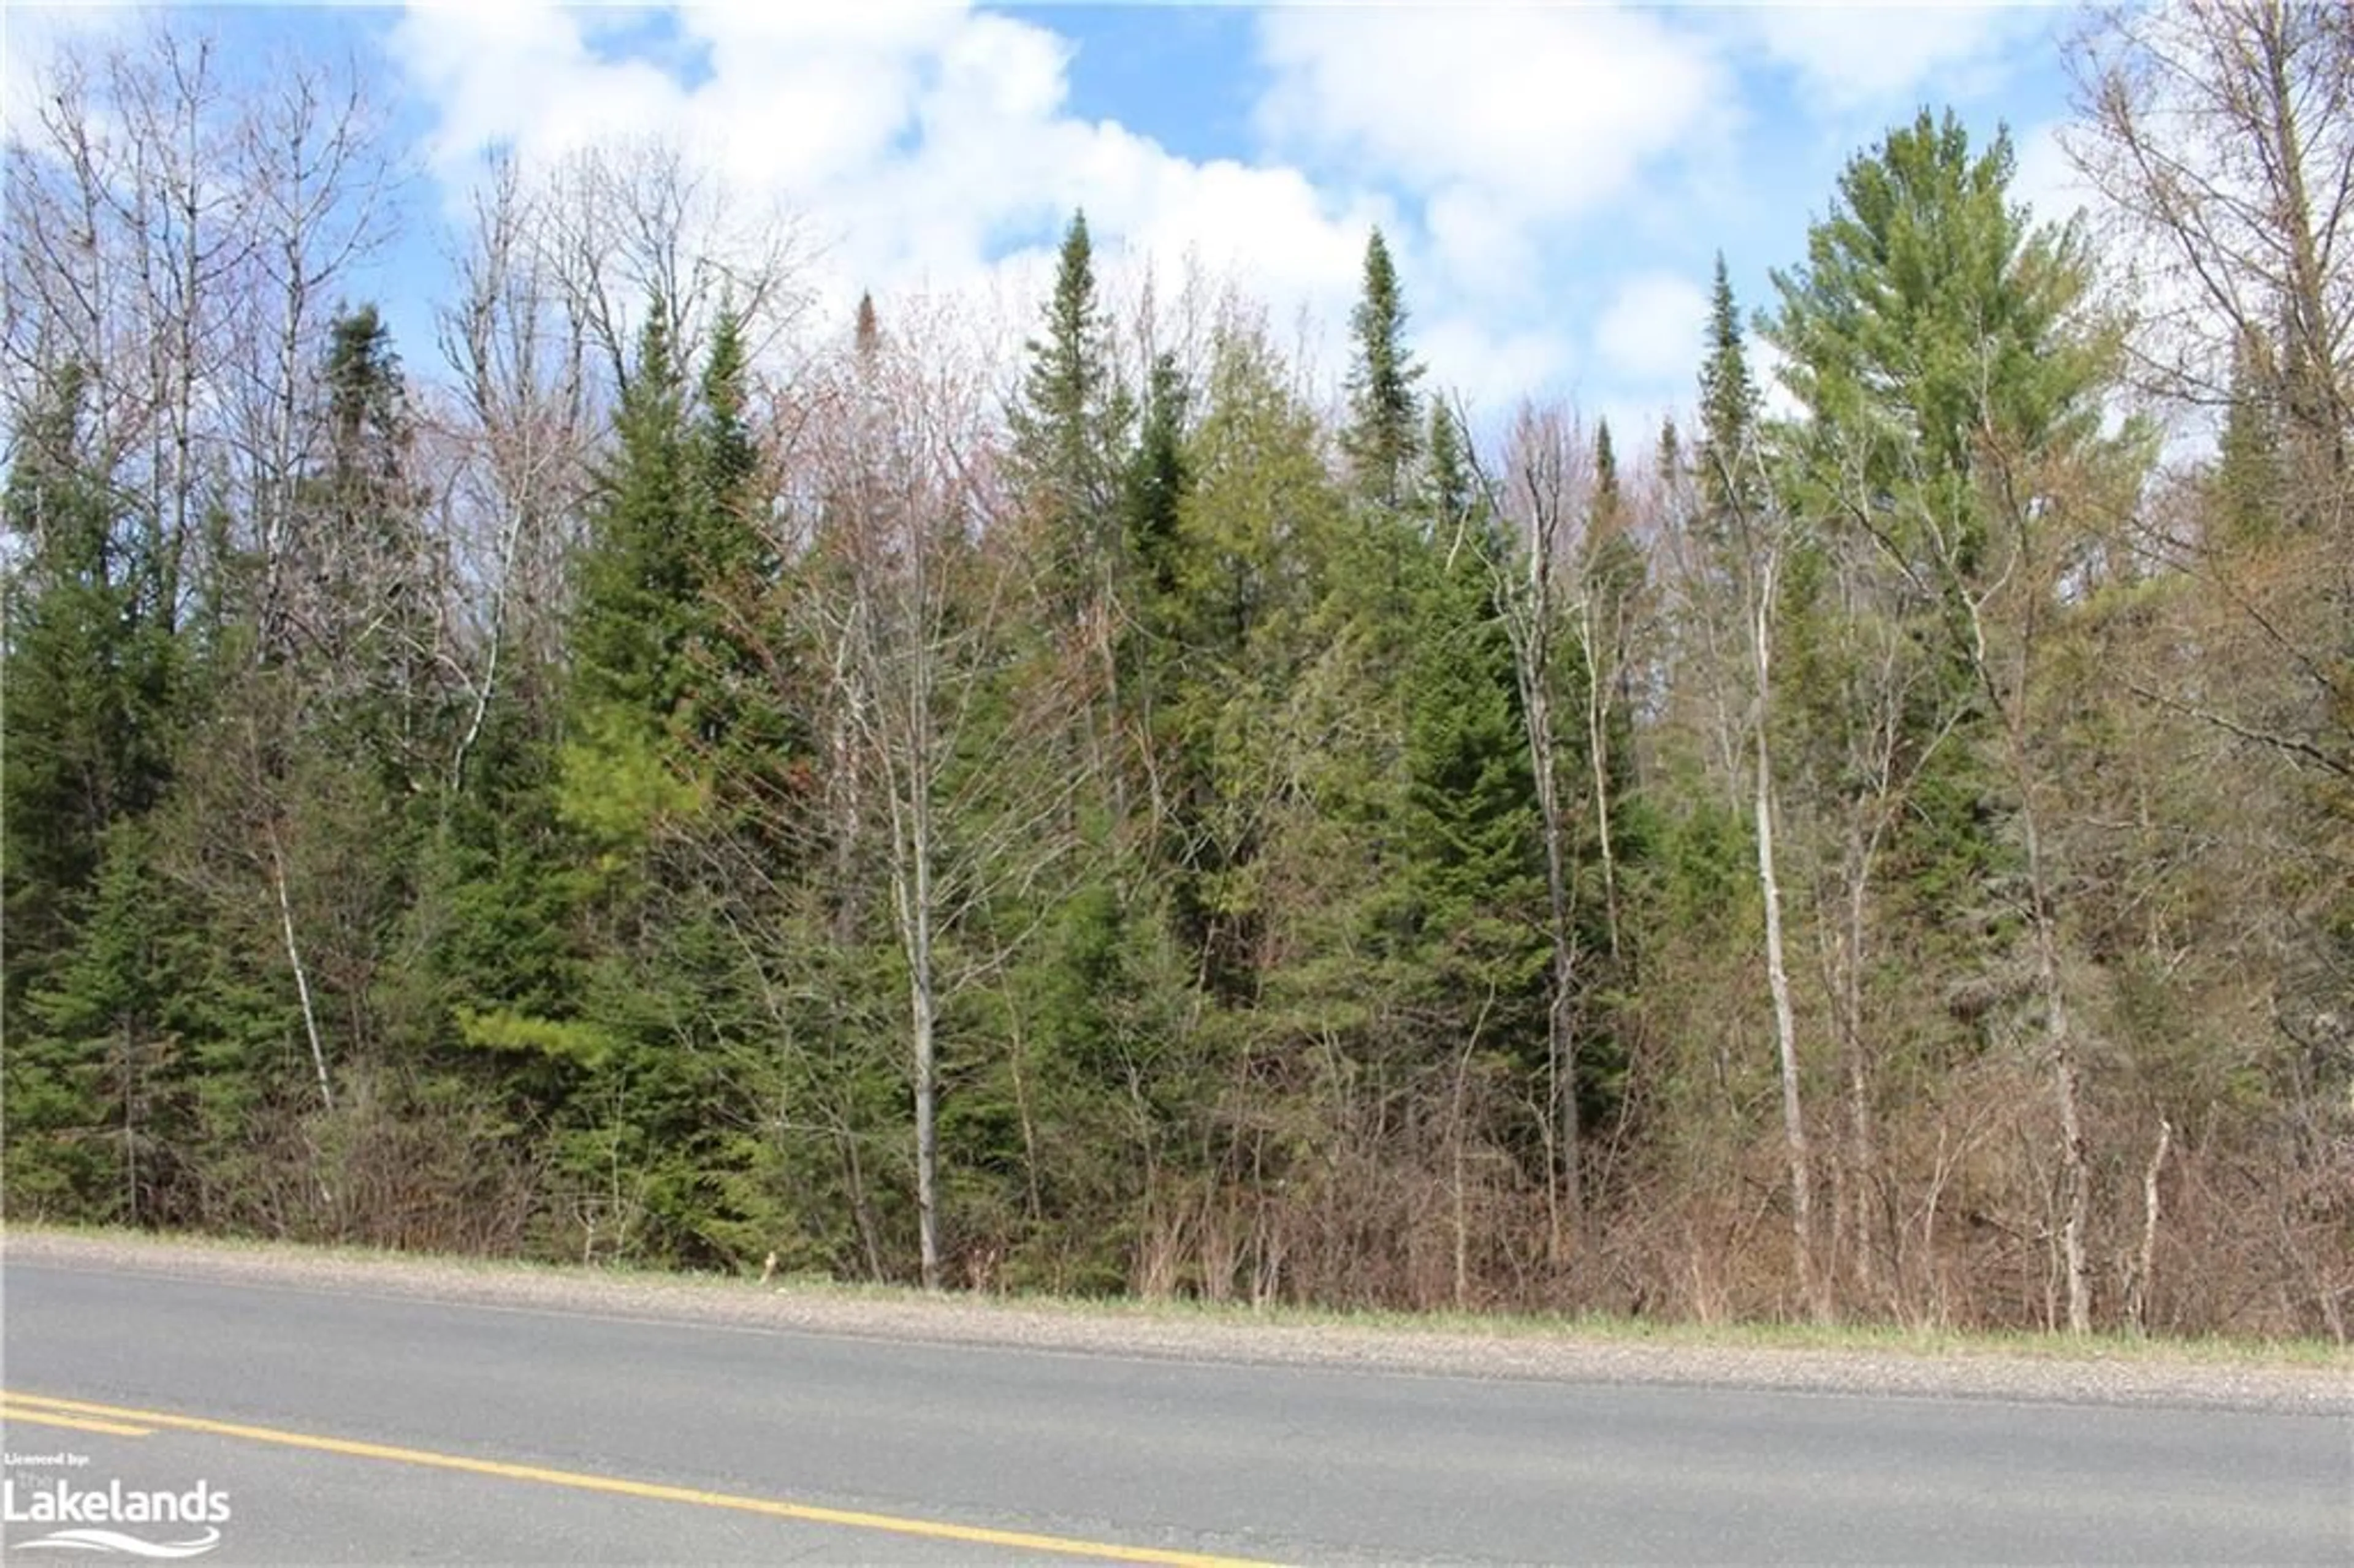 Forest view for 0 Gelert Rd, Minden Ontario K0M 2K0